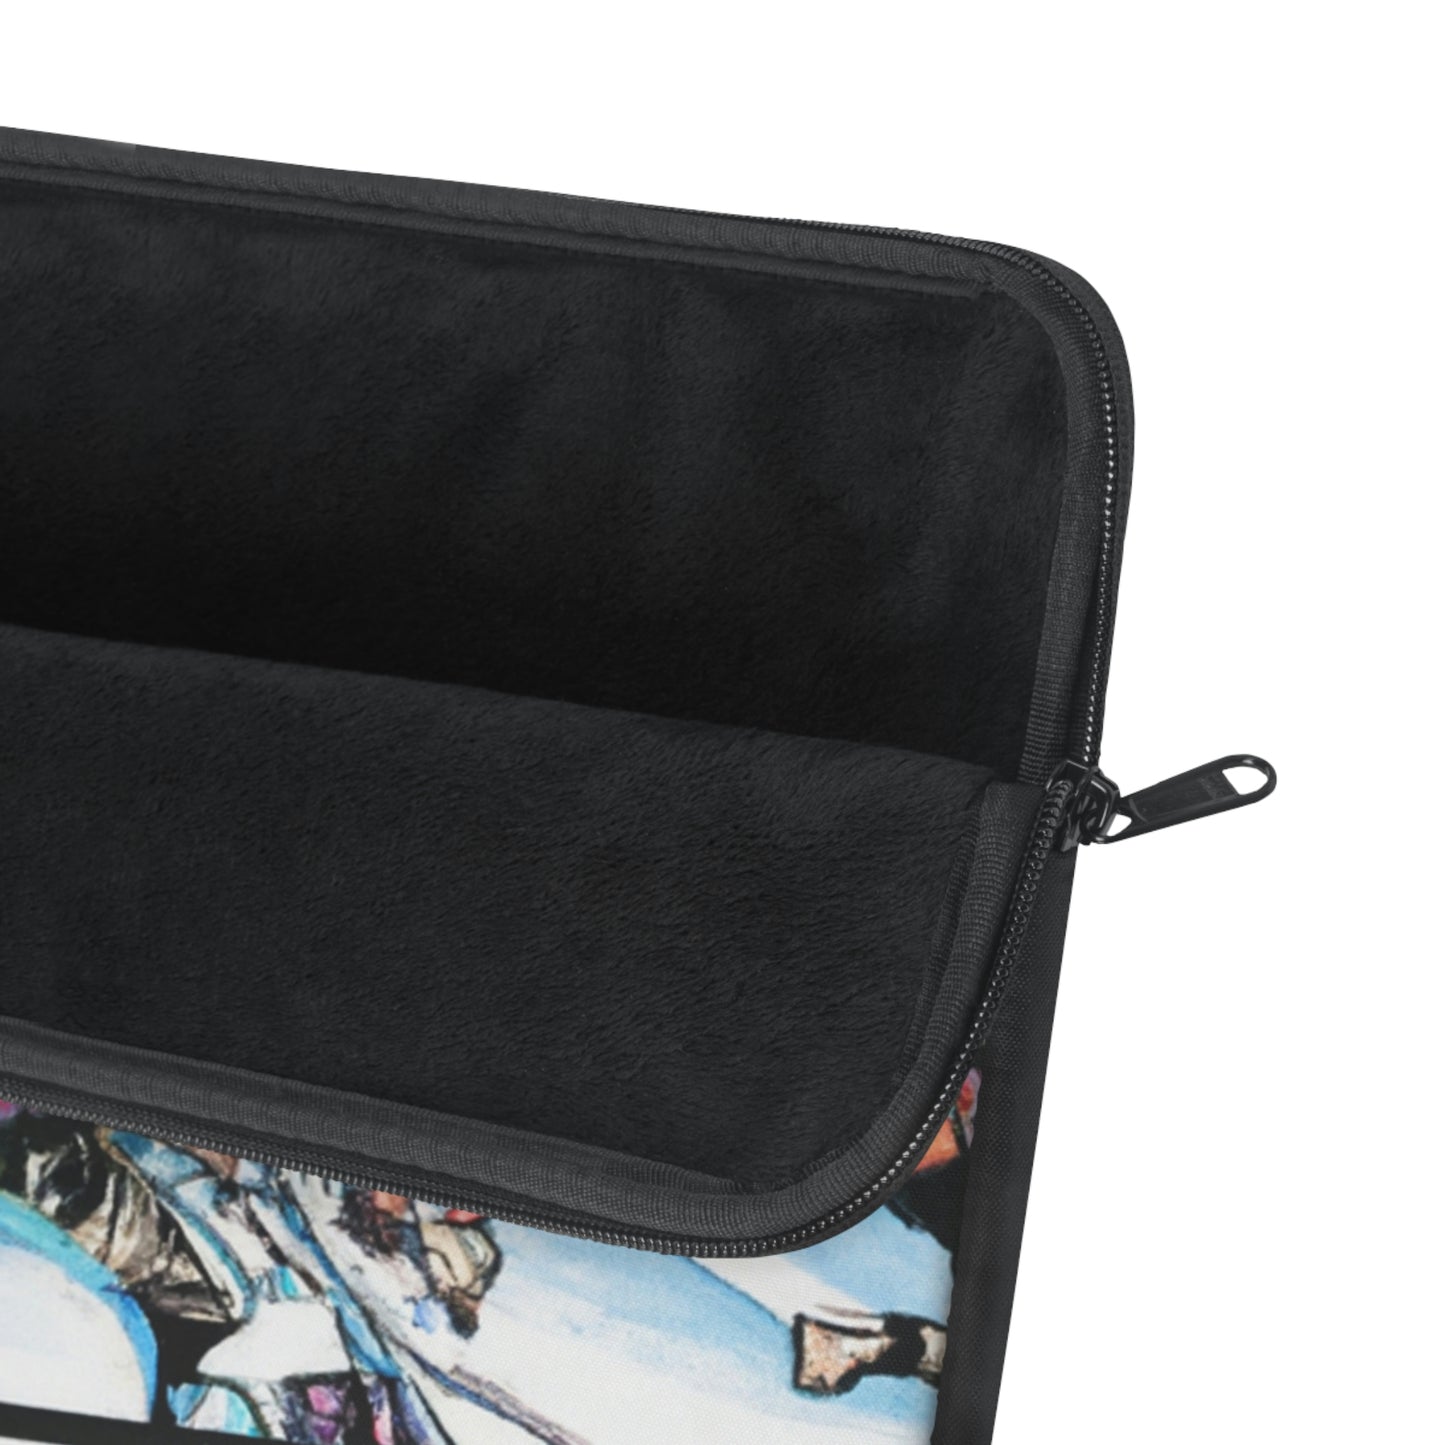 Davey "Lucky" Smith - Comic Book Collector Laptop Computer Sleeve Storage Case Bag